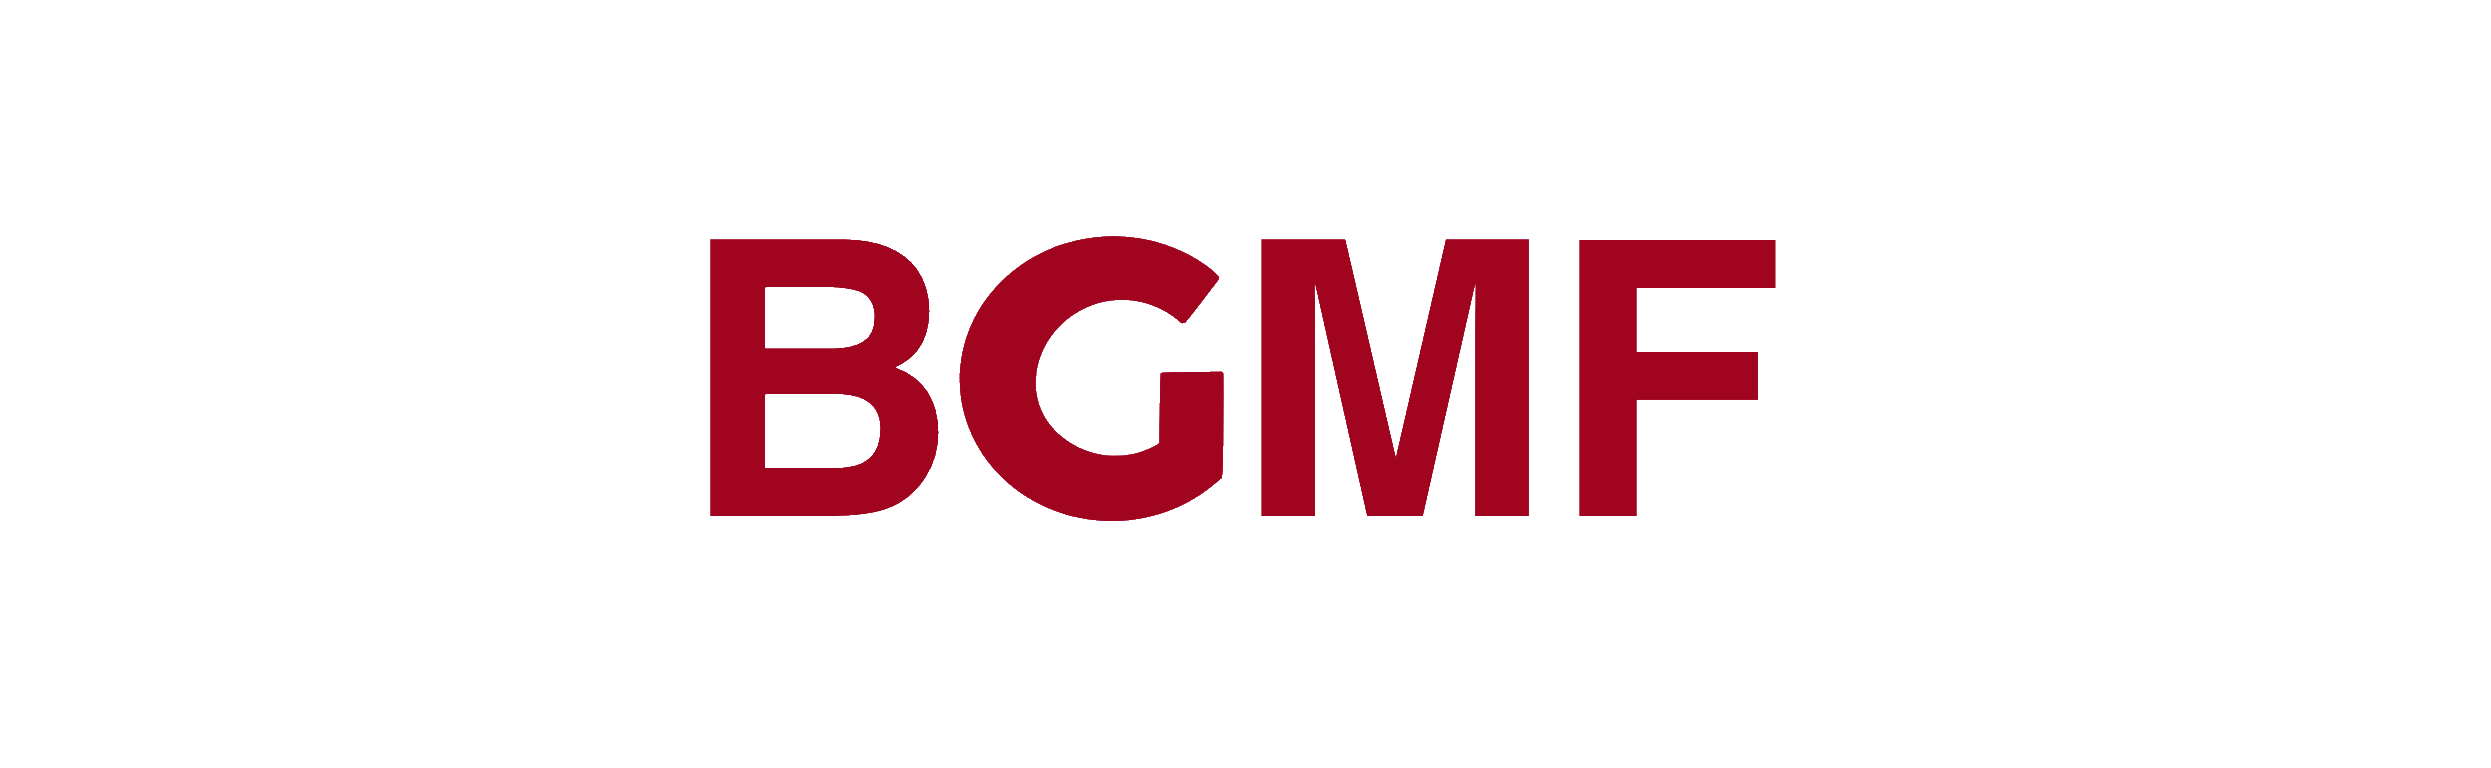 BGMF Logo